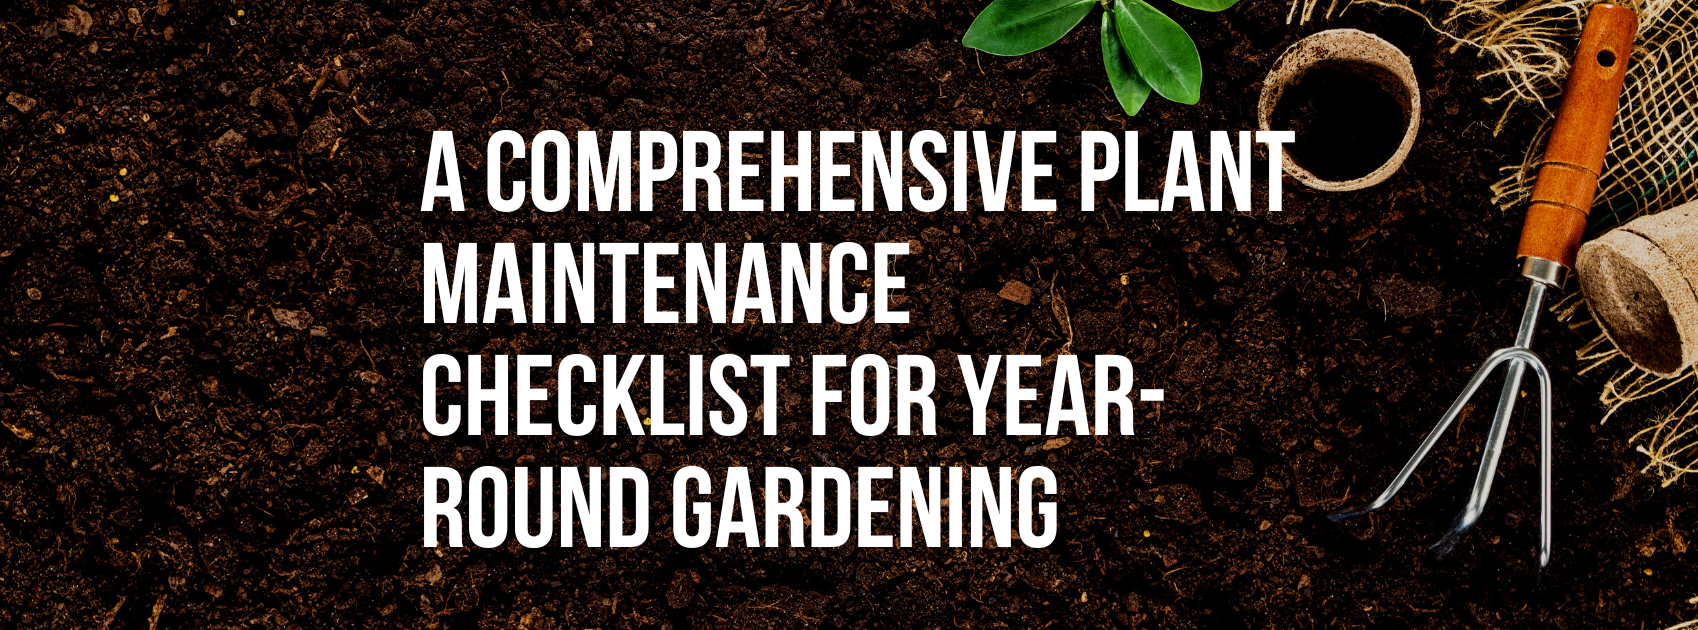 A Comprehensive Plant Maintenance Checklist for Year-Round Gardening